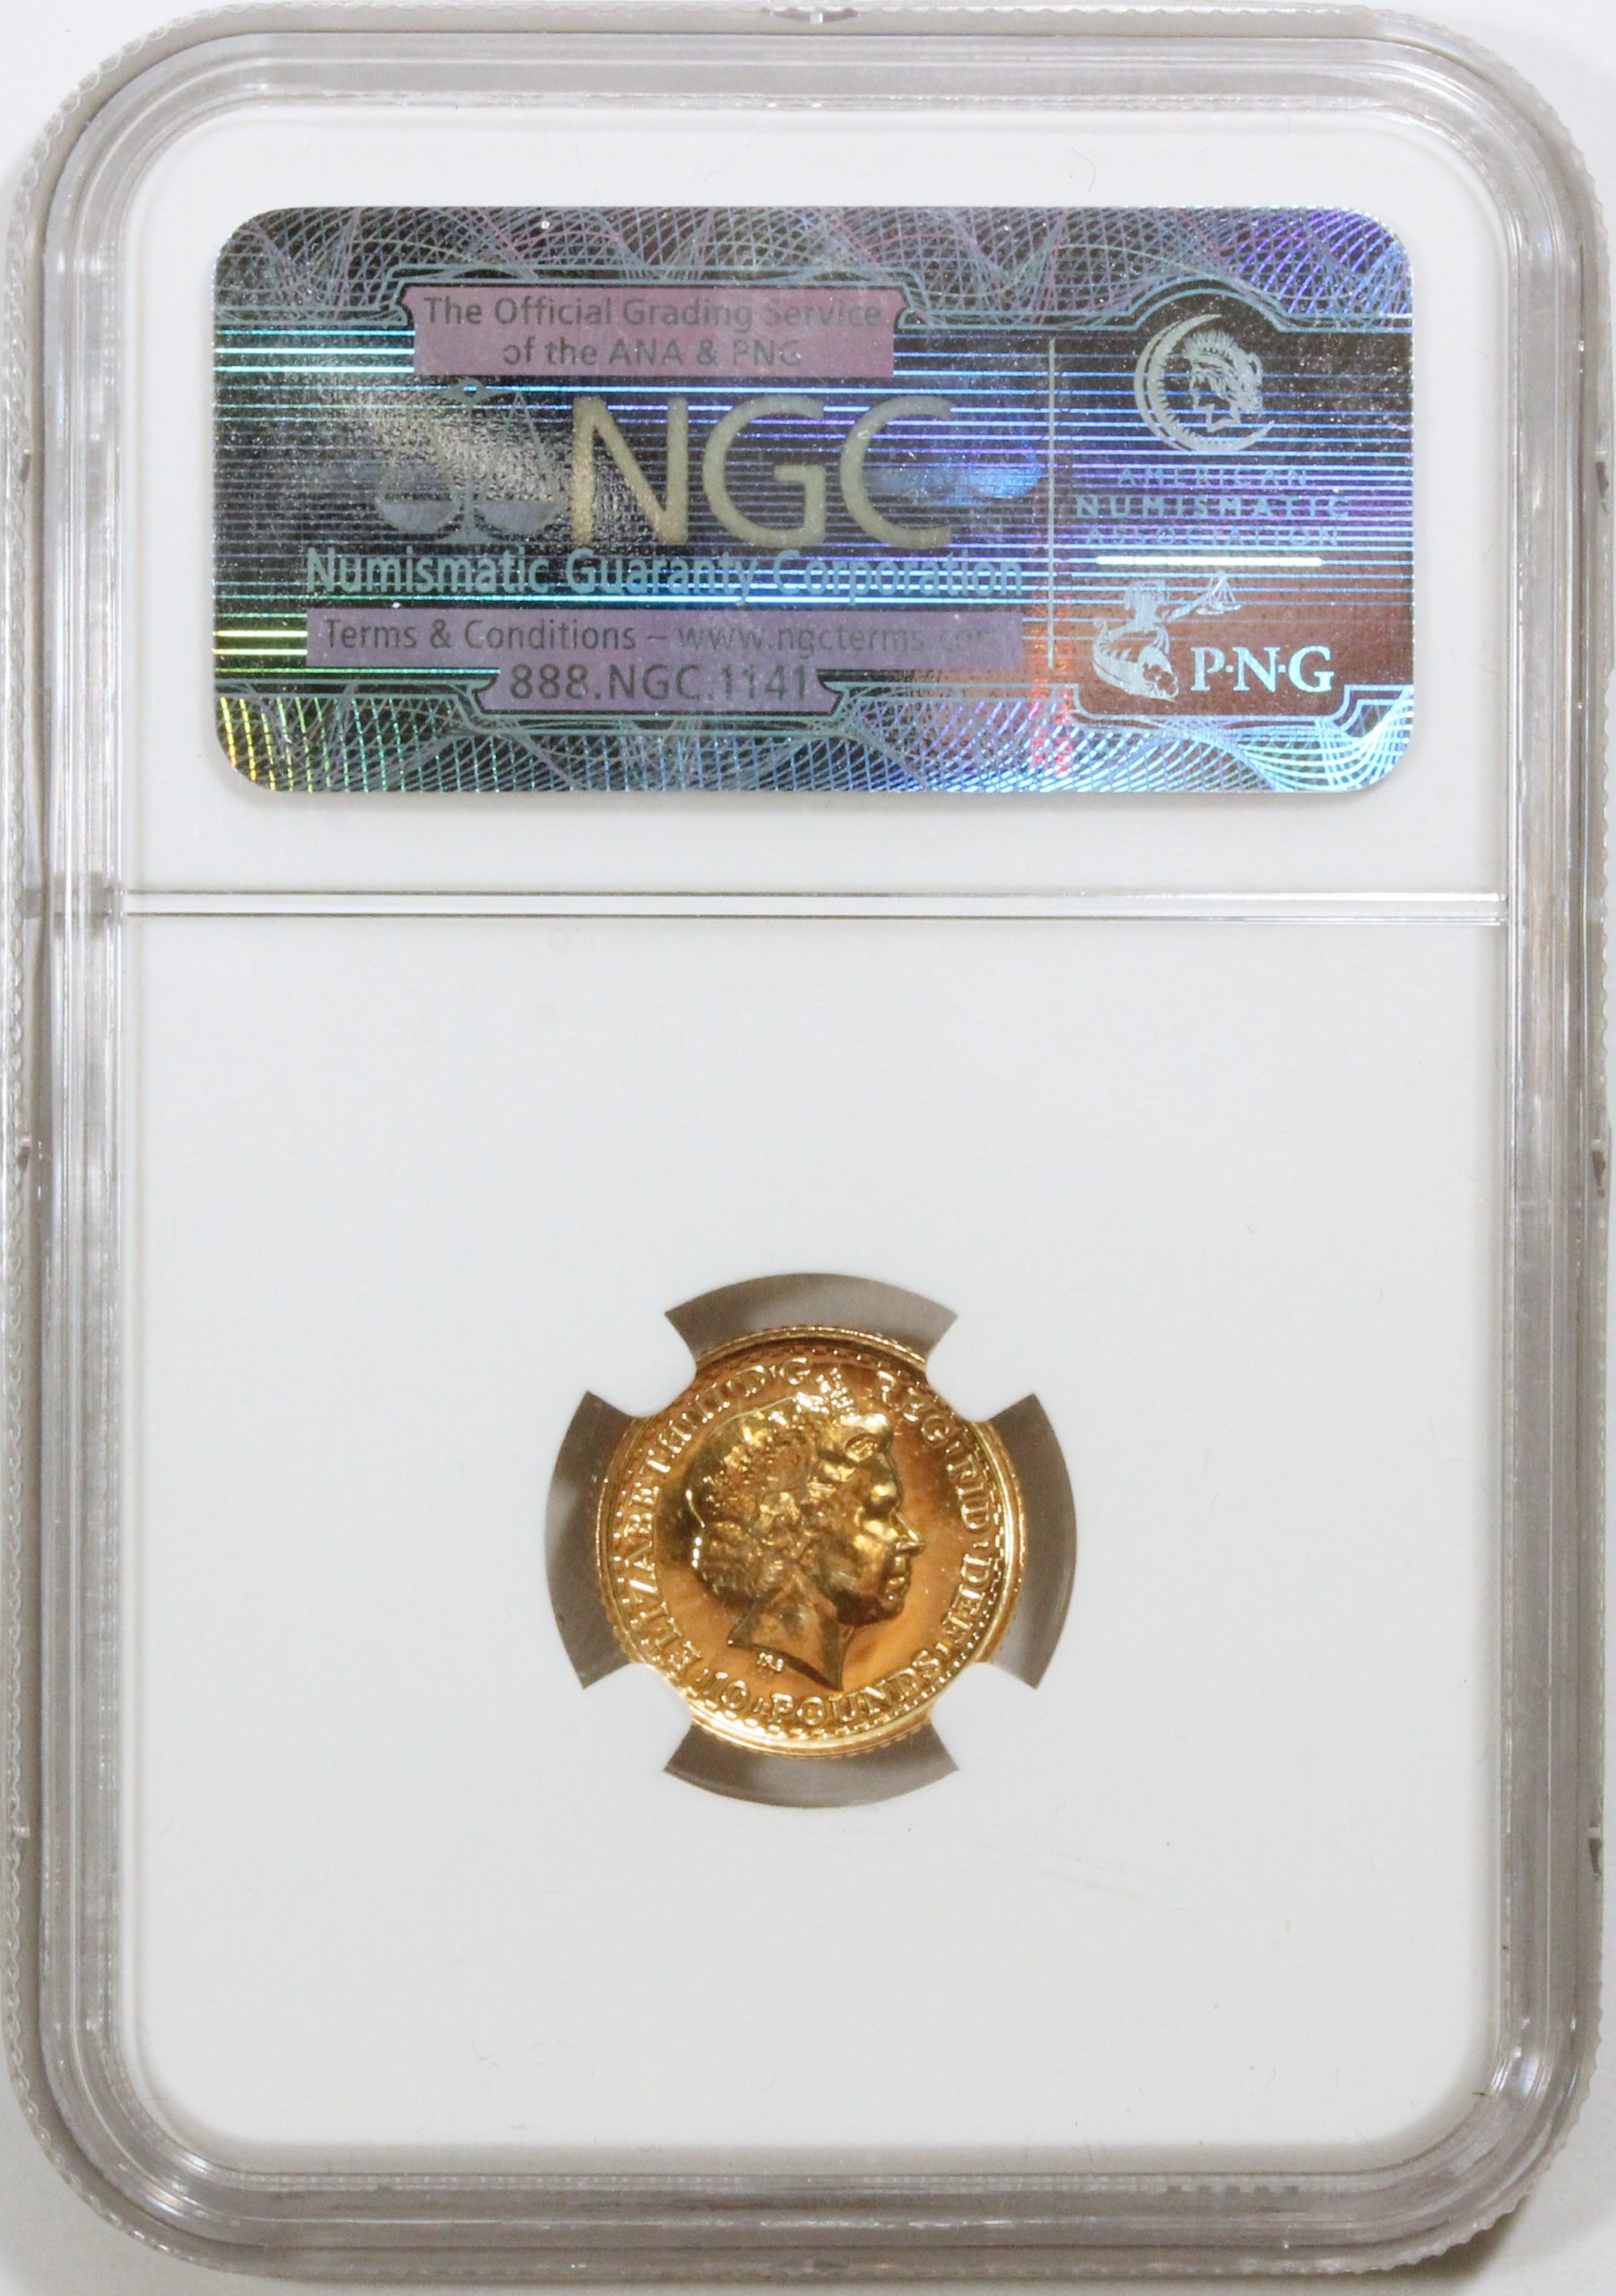 イギリス 10ポンド金貨 2001年 NGC MS65 ブリタニア ライオン 古銭 